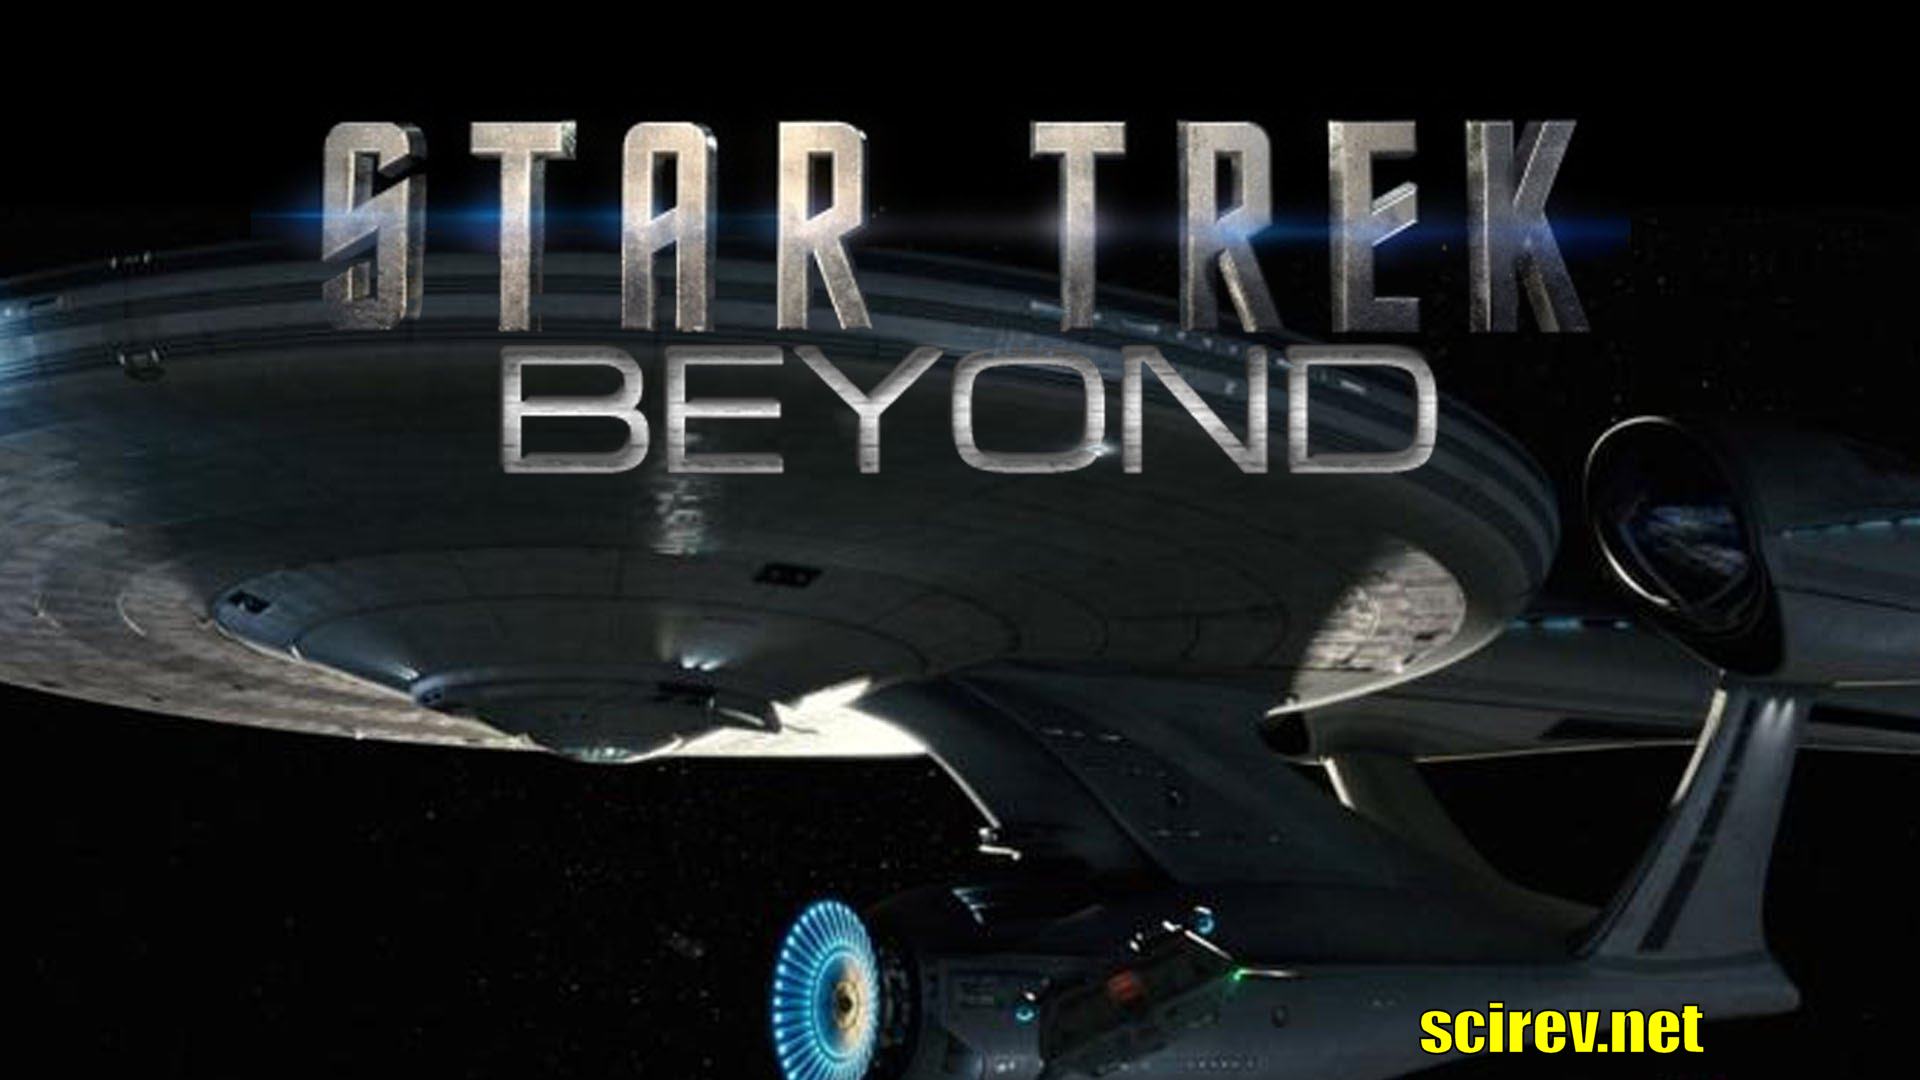 VIDEO: New Star Trek Beyond Trailer, and Axanar News